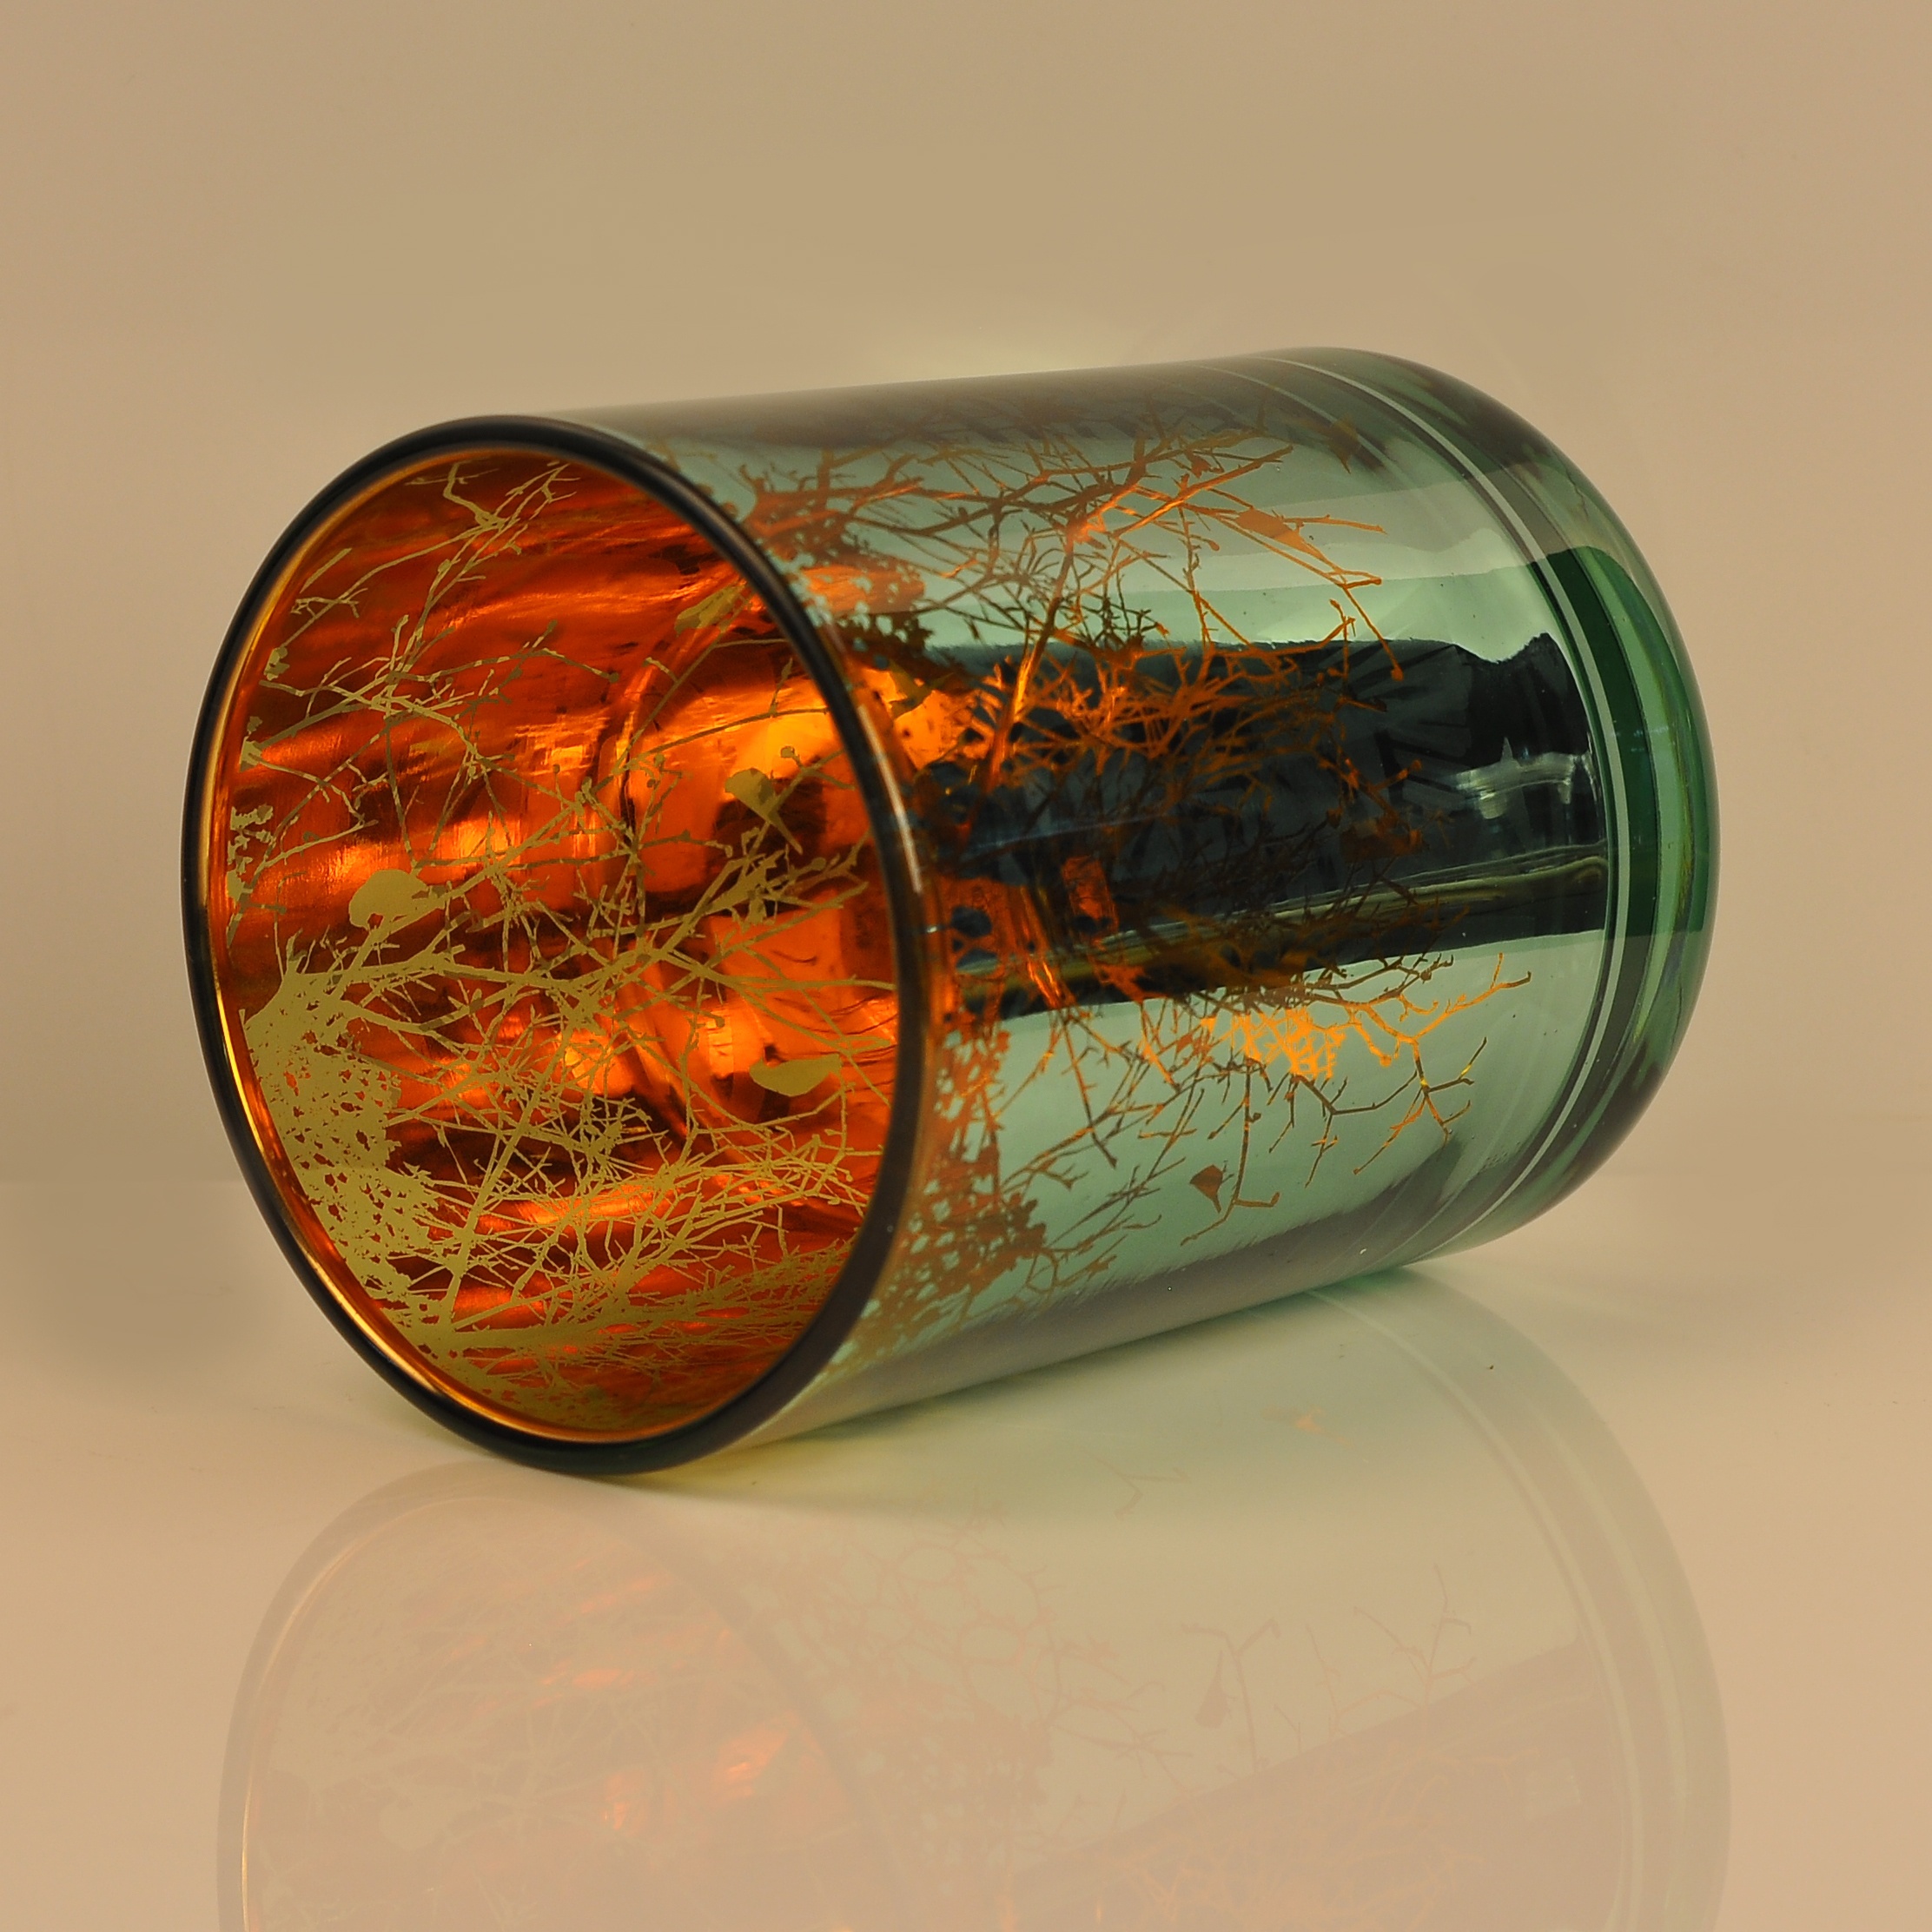 8oz 10oz Wholesales laser customized unique glass candle jars